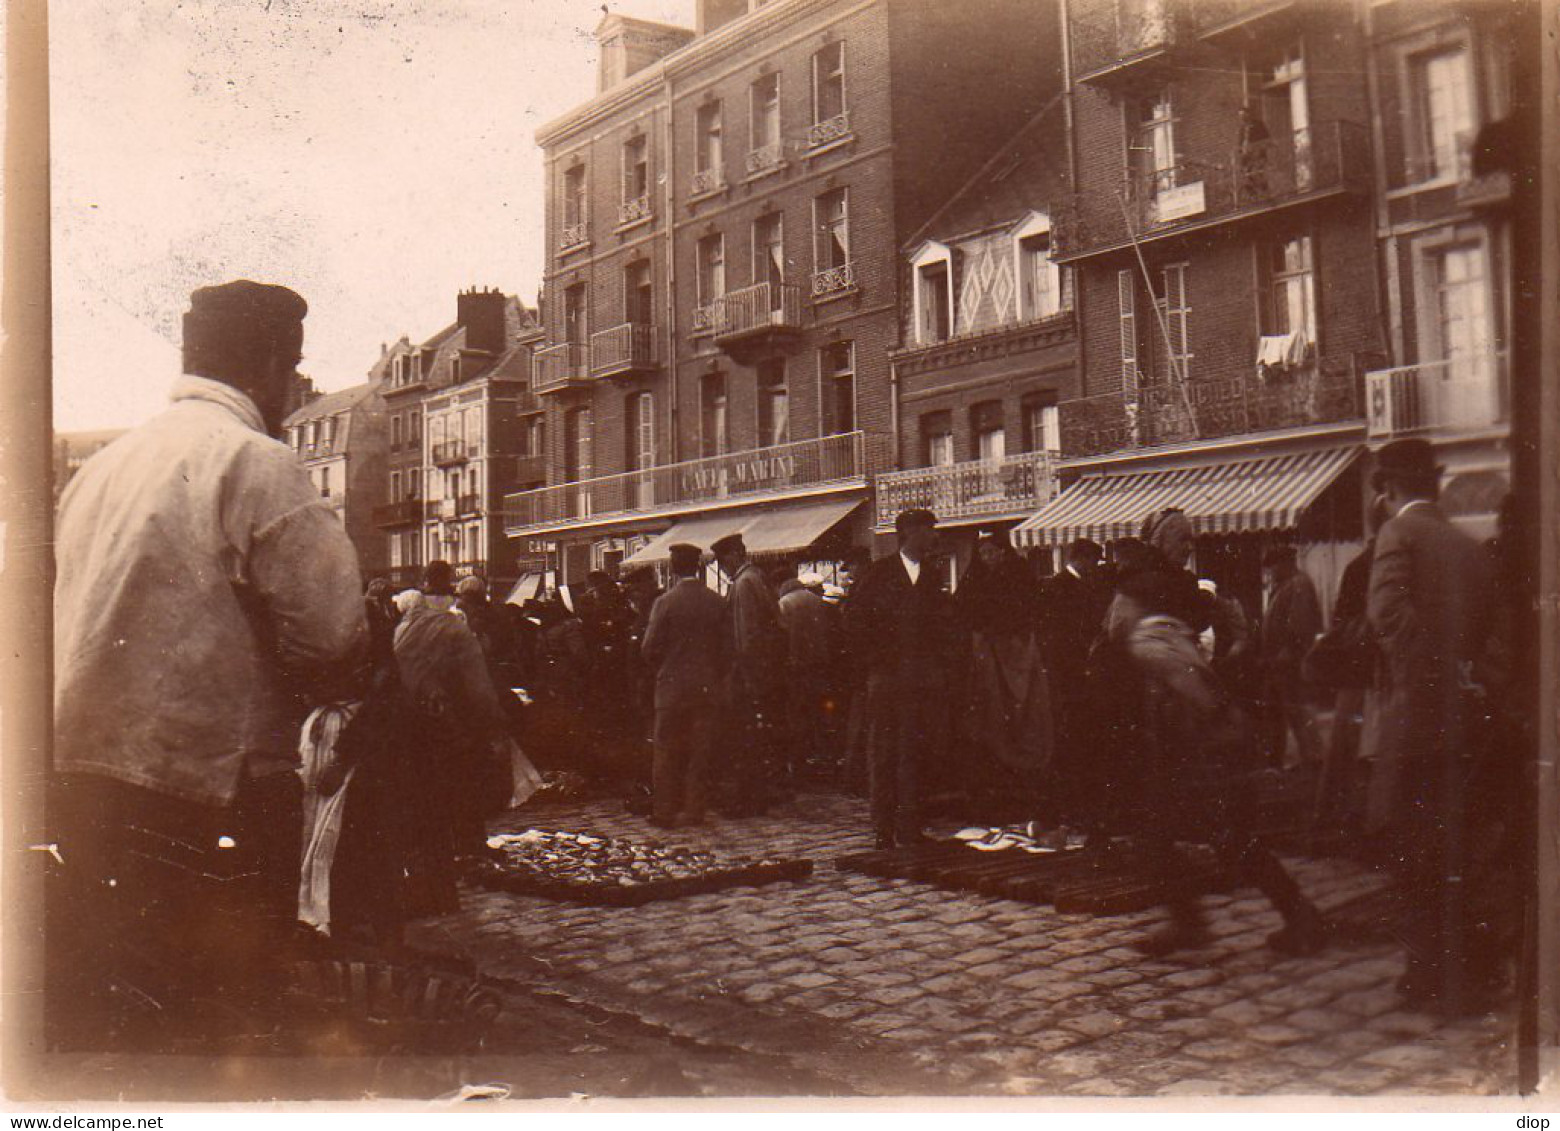 Photo Vintage Paris Snap Shop -foule Crowd P&ecirc;cheur Sinner March&eacute; Market  - Professions